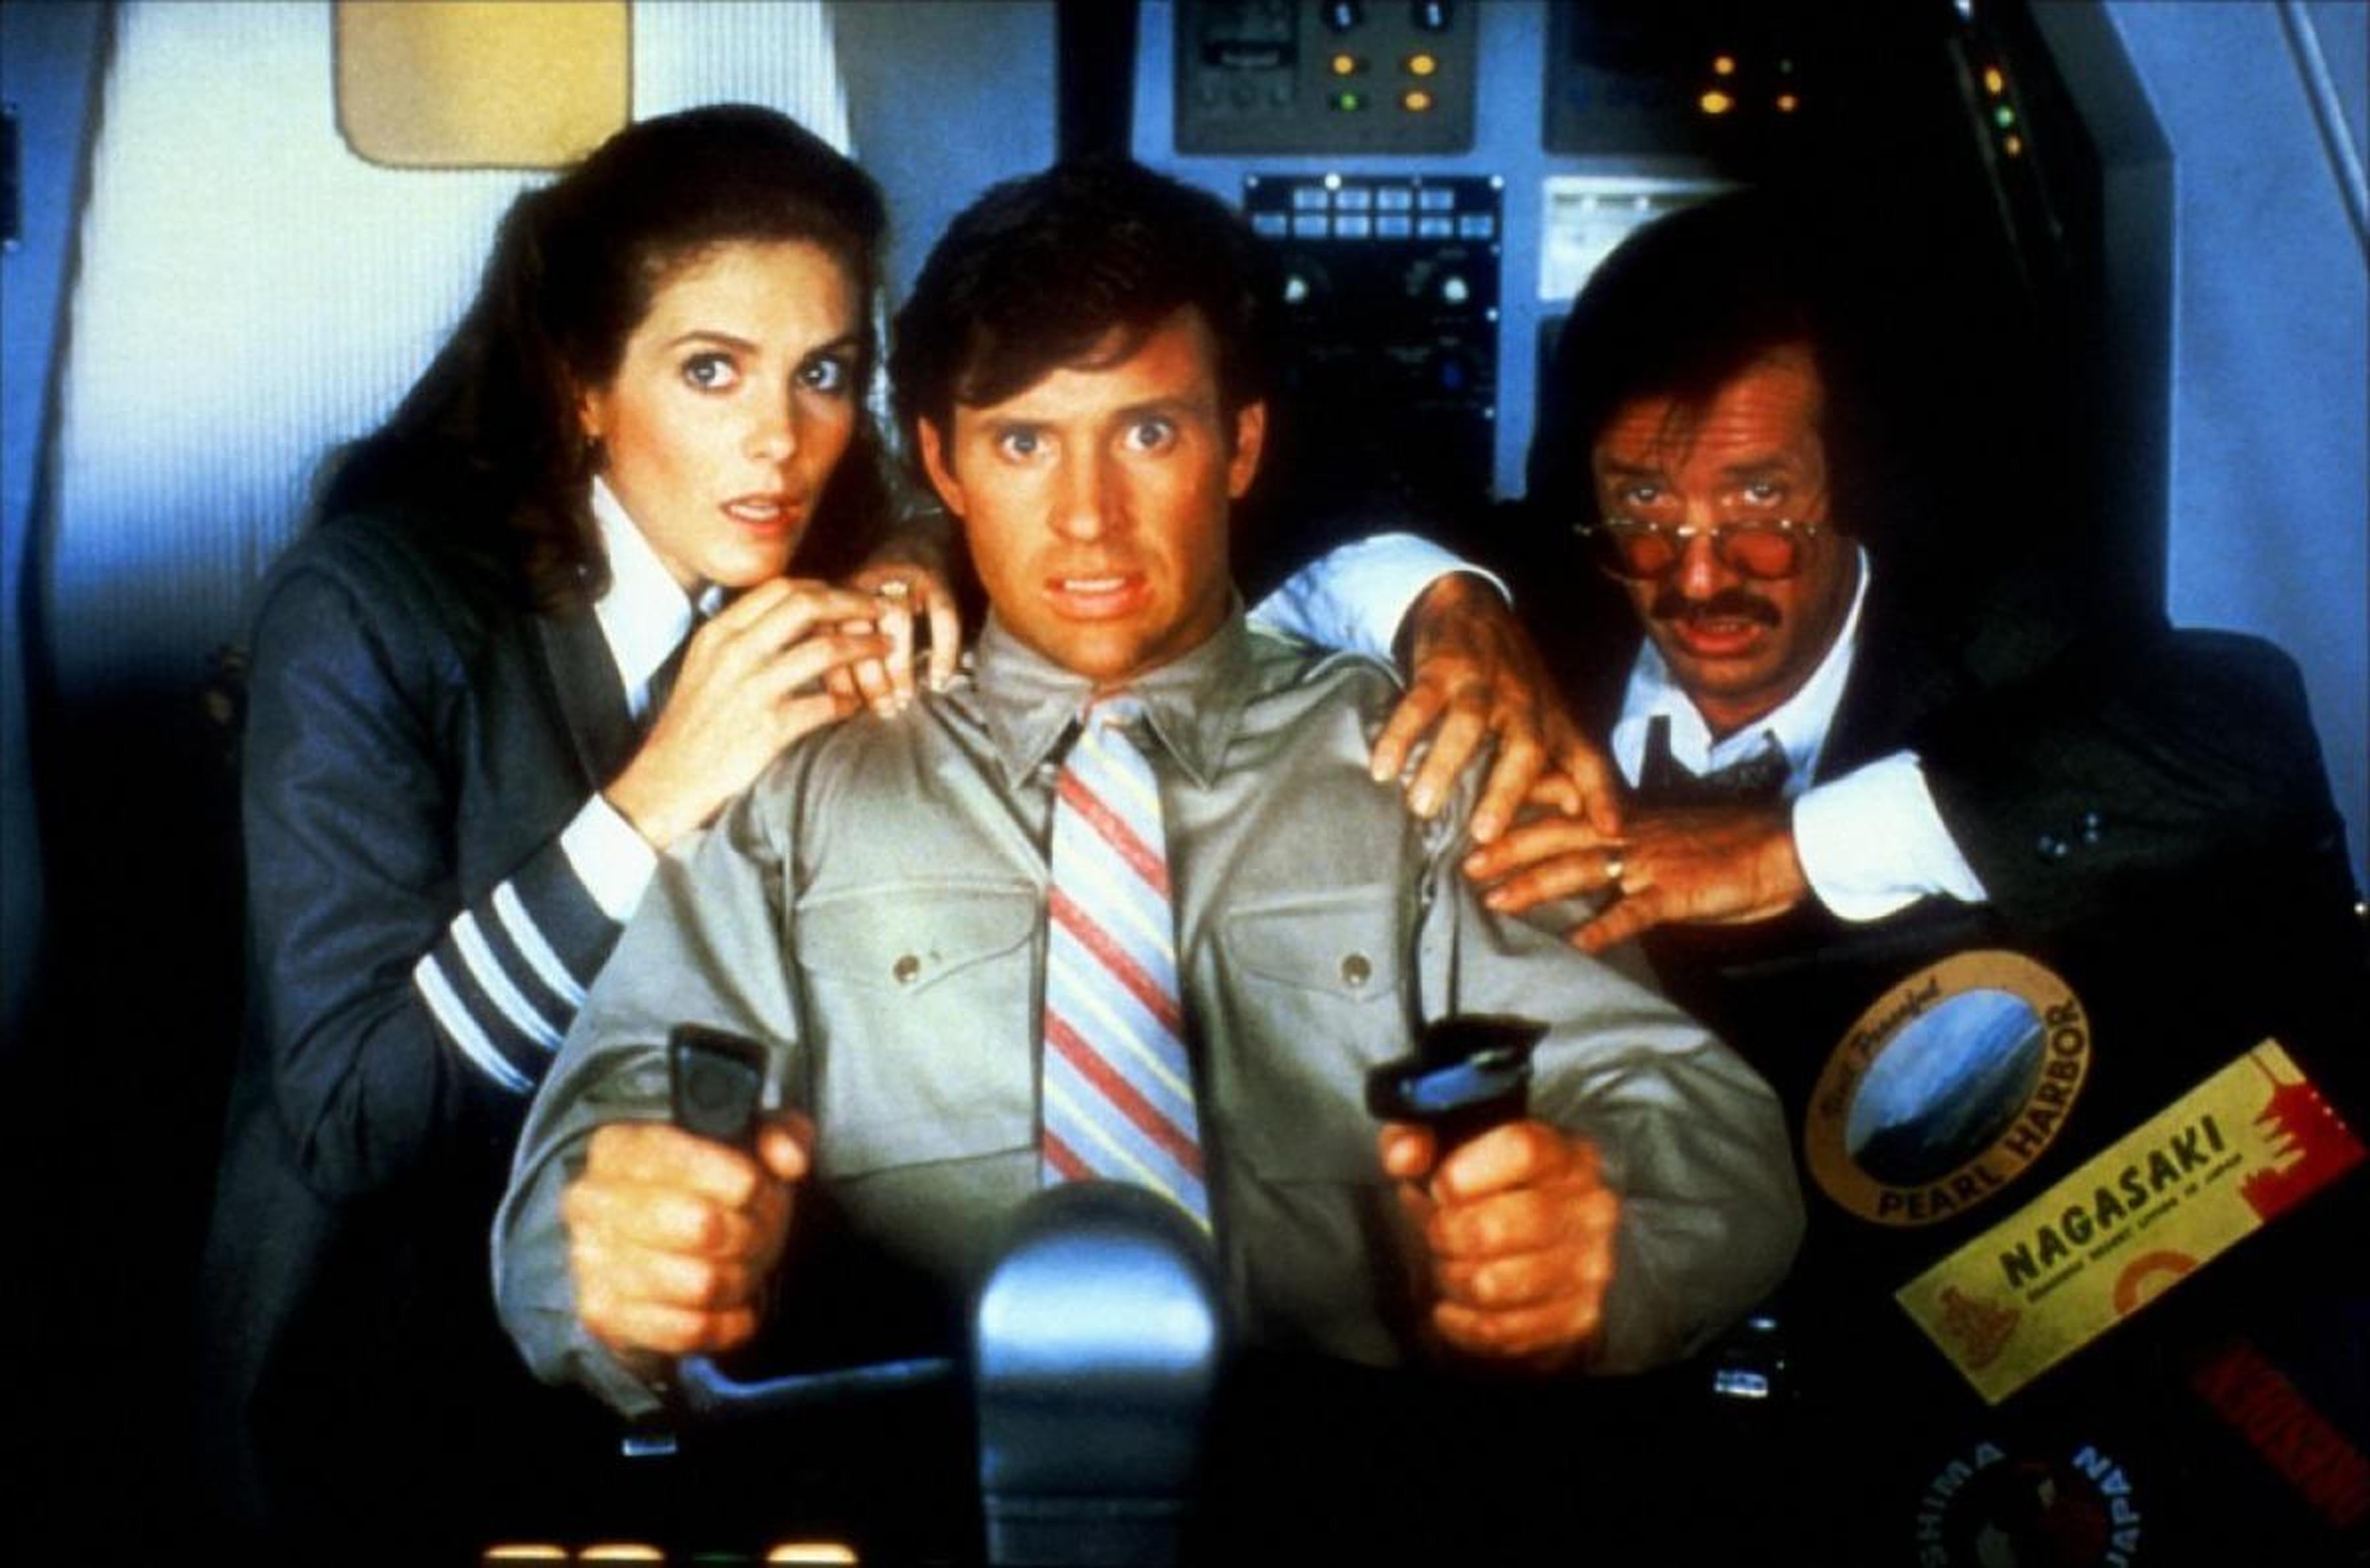 Top15：《空前绝后满天飞》 (1980) 本片虽然是喜剧片，其实故事也挺紧张刺激的呢，因机长食物中毒致死，前飞行员泰德被迫去接管控制飞机航行……